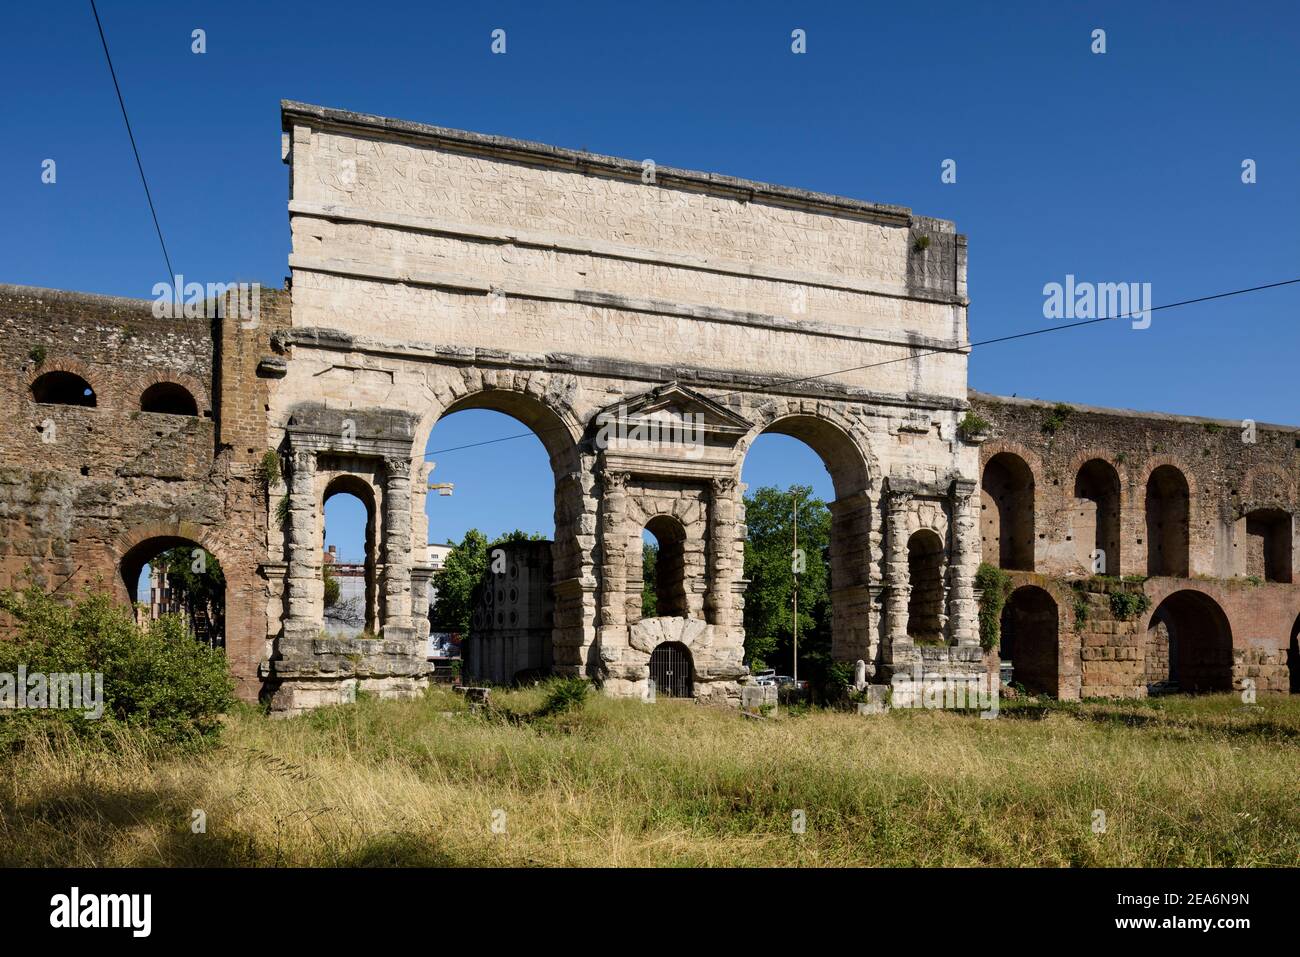 Roma. Italia. Porta maggiore (vista interna, affacciata sulla città), costruita nel 52 d.C. dall'imperatore Claudio, è una delle porte orientali dell'Aur del III secolo Foto Stock